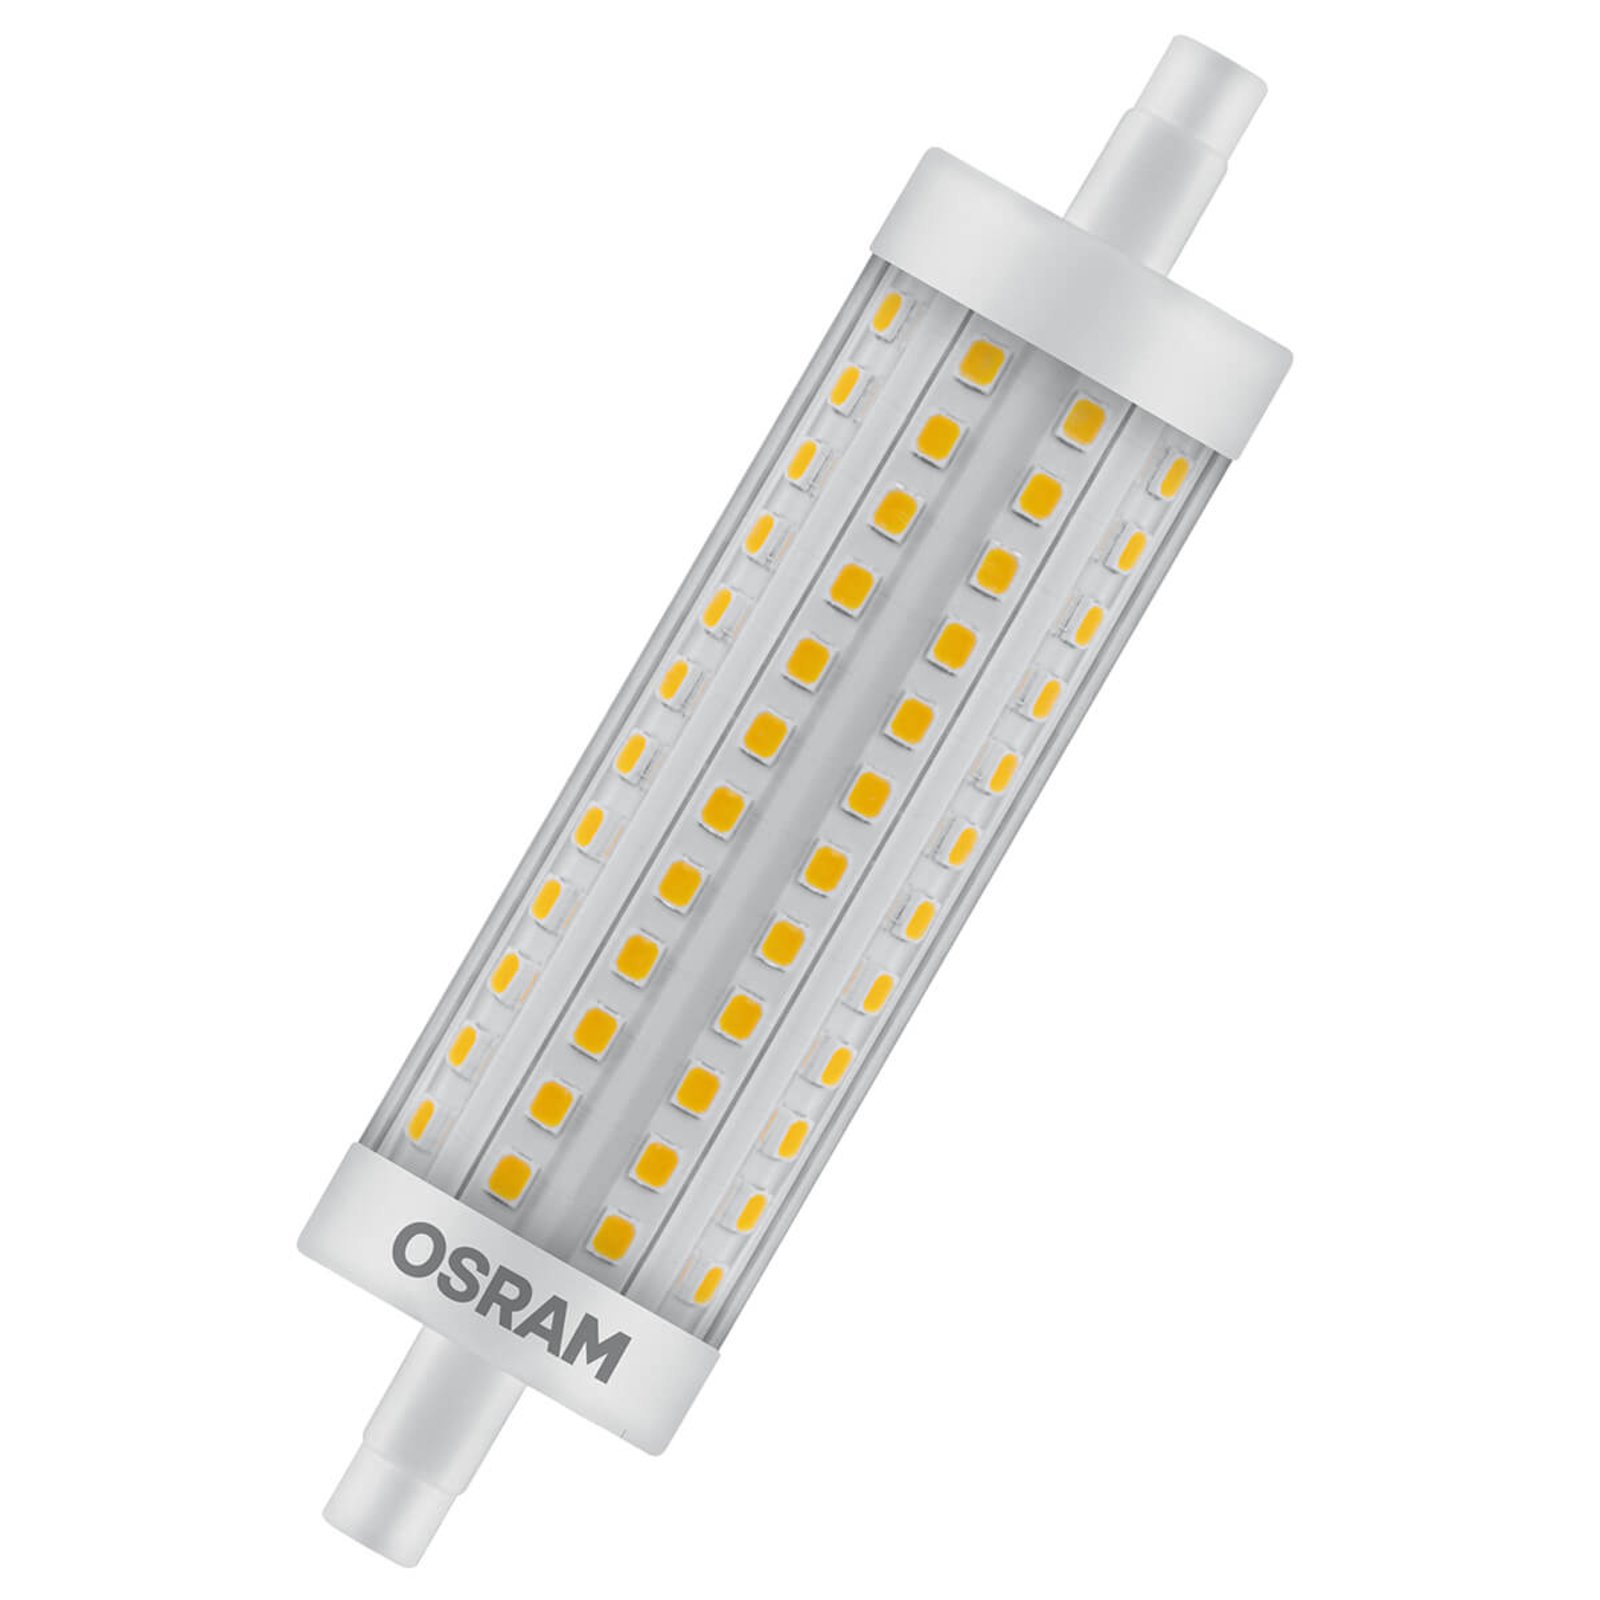 OSRAM LED-Stablampe R7s 15W, warmweiß, 2.000 lm